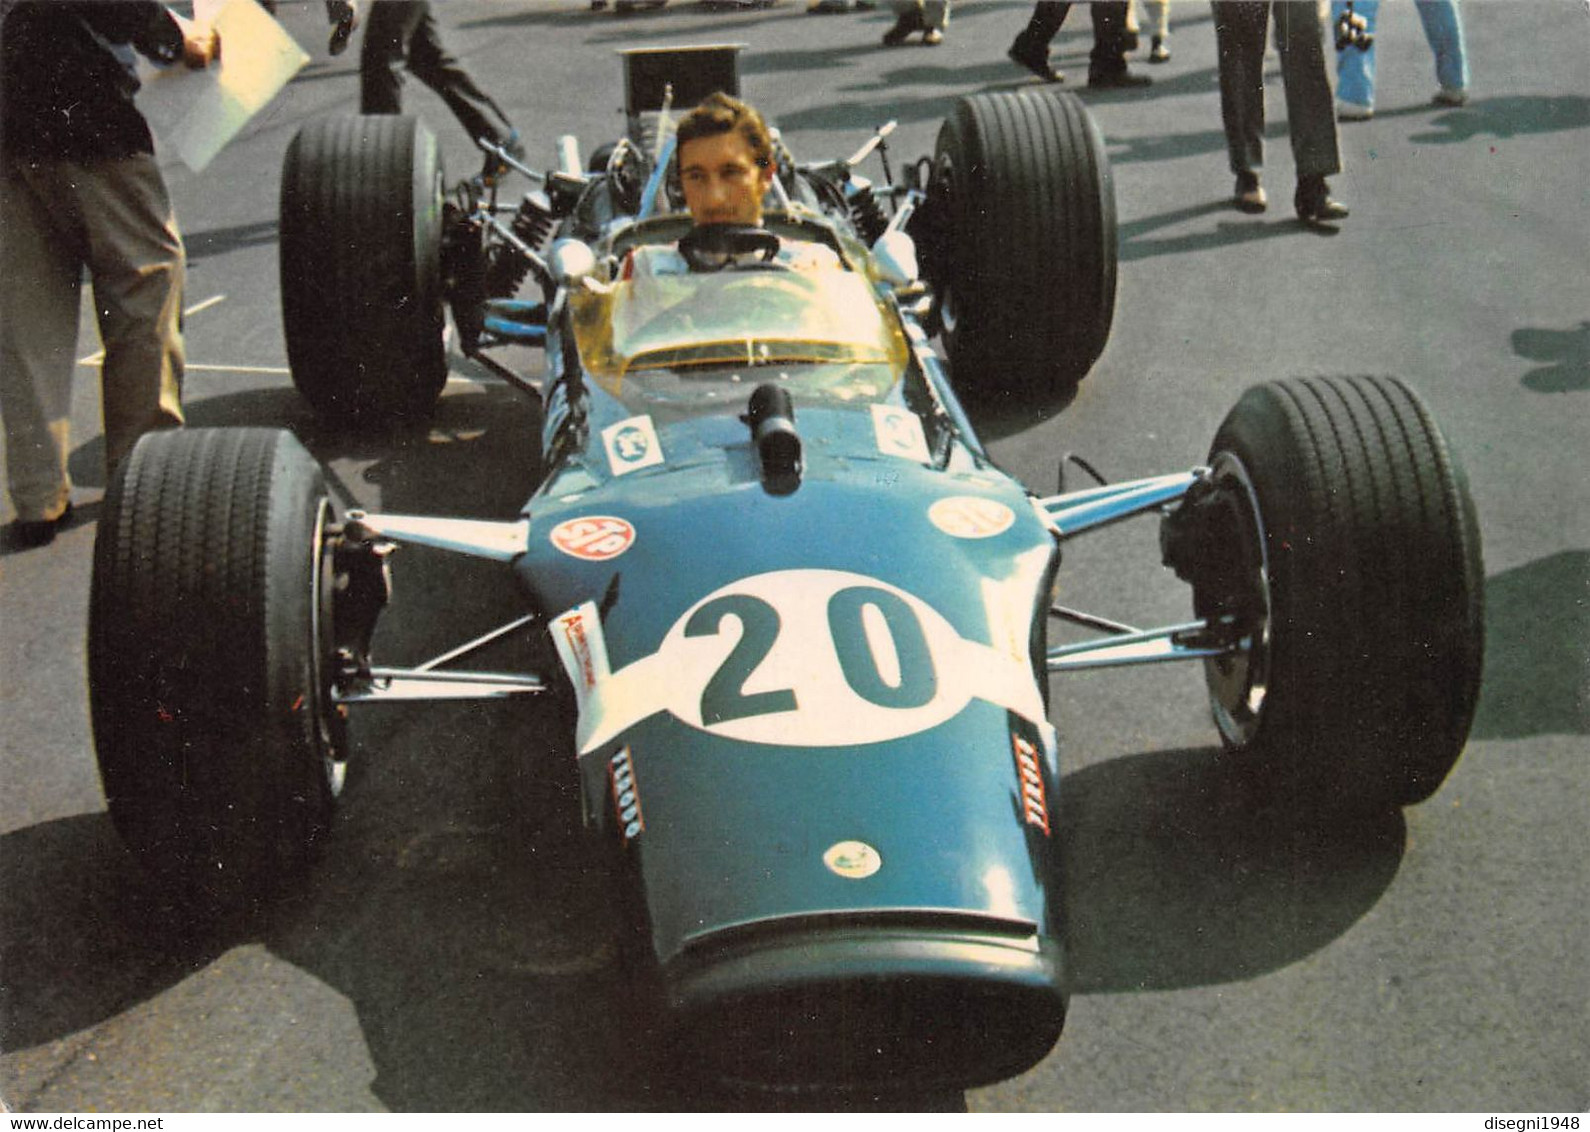 011007 " JOSEPH SIFFERT  - LOTUS FORD F. 1 1968 - GRAN PREMIO D'ITALIA 1968 - MONZA" CARTOLINA  ORIG. NON SPED. - Automobilismo - F1